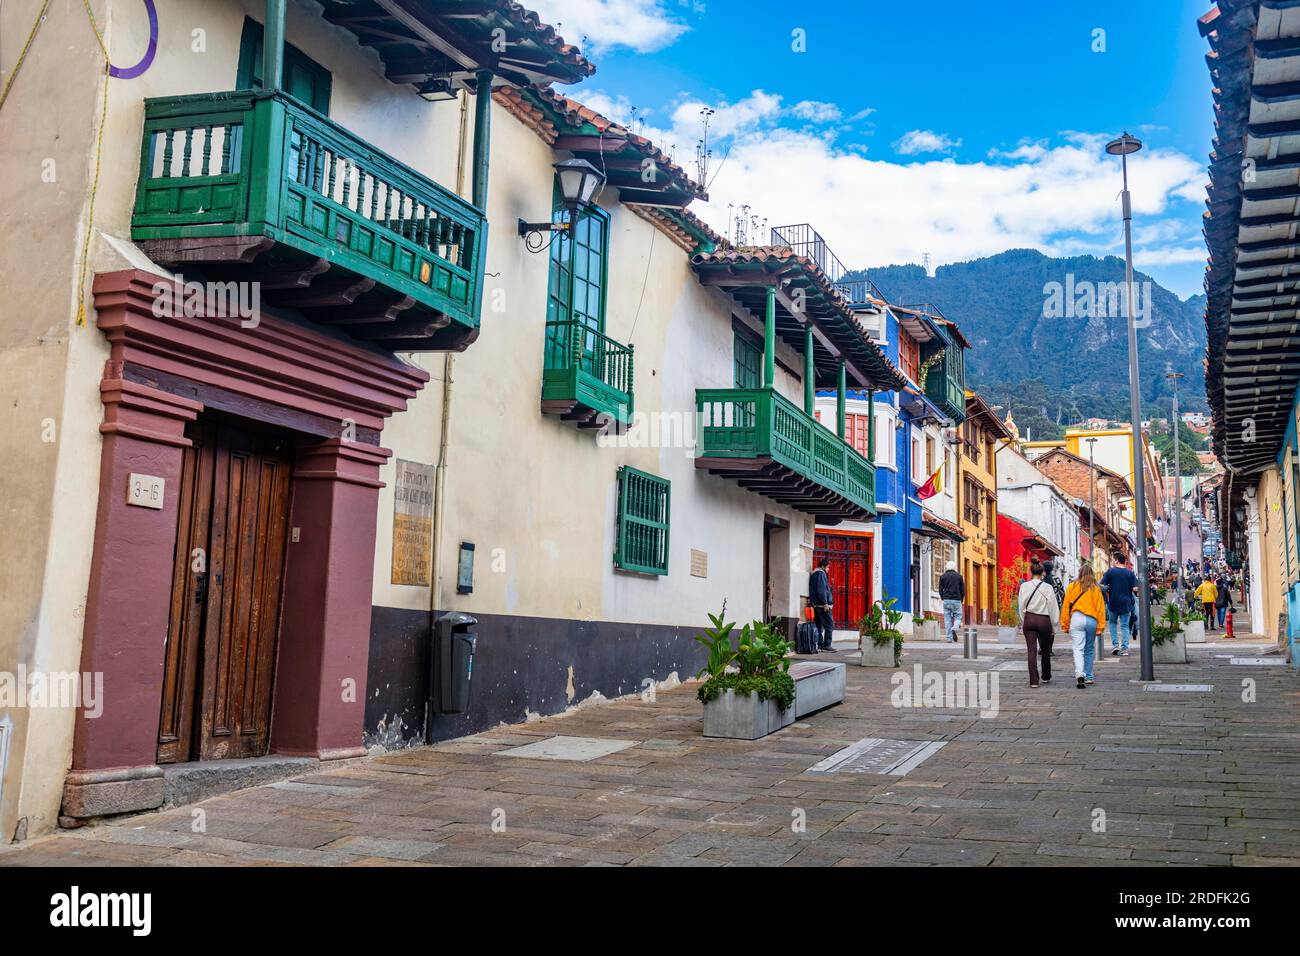 Candelaria neighbourhood, Bogota, Colombia Stock Photo